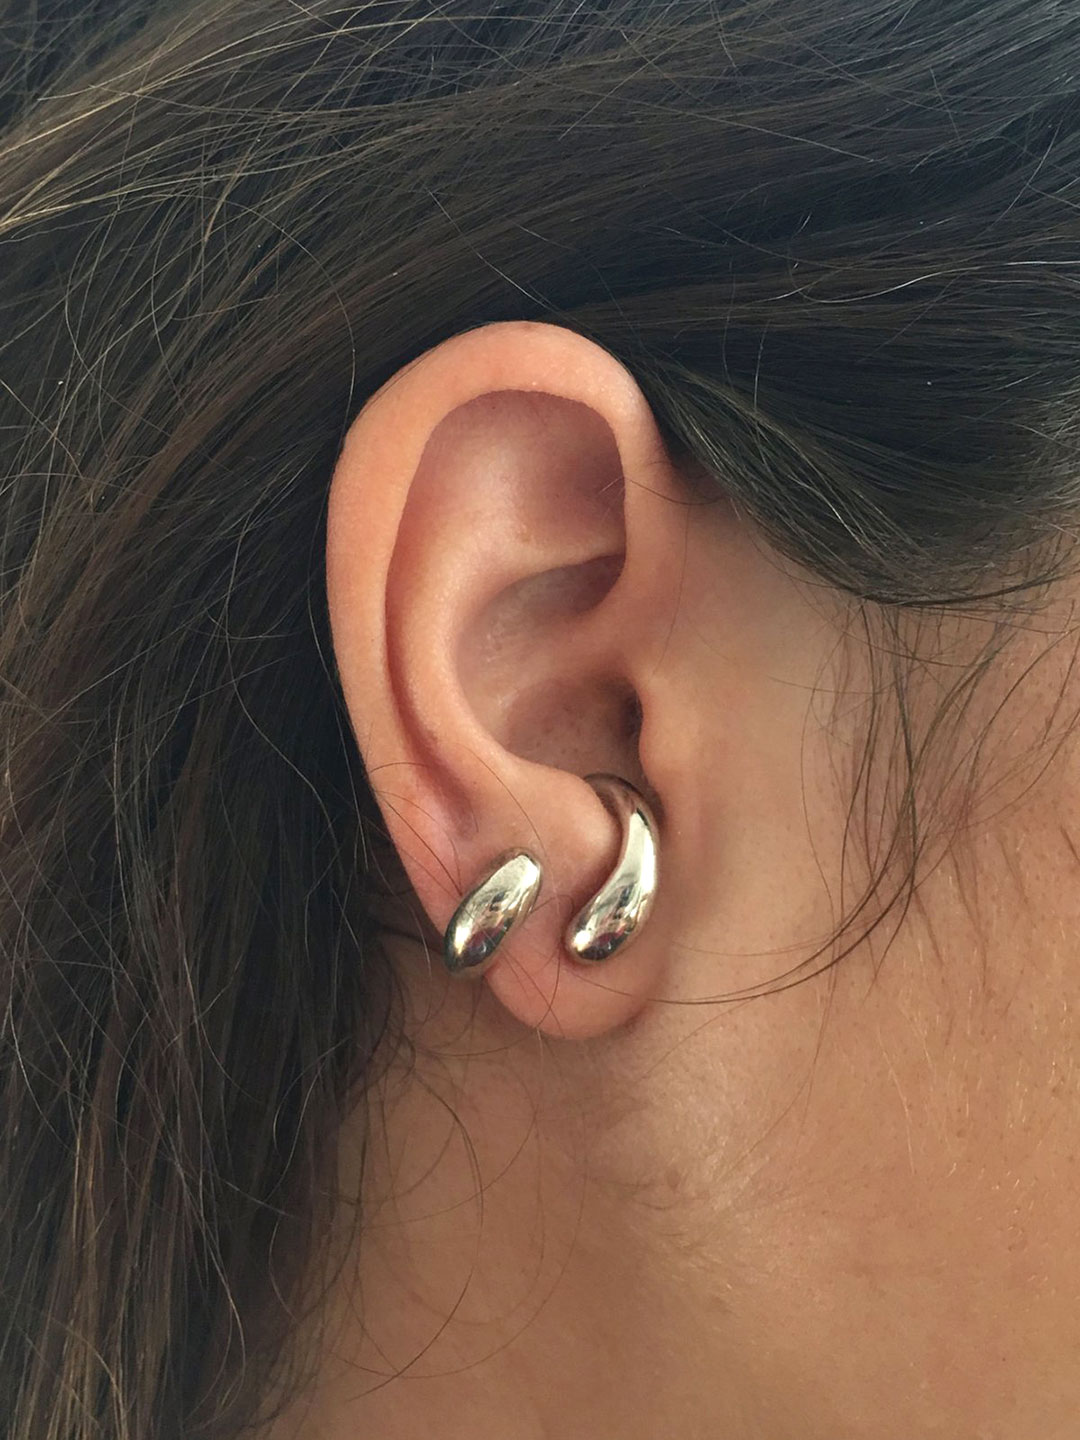 Vuelta Pierced Earrings - Silver